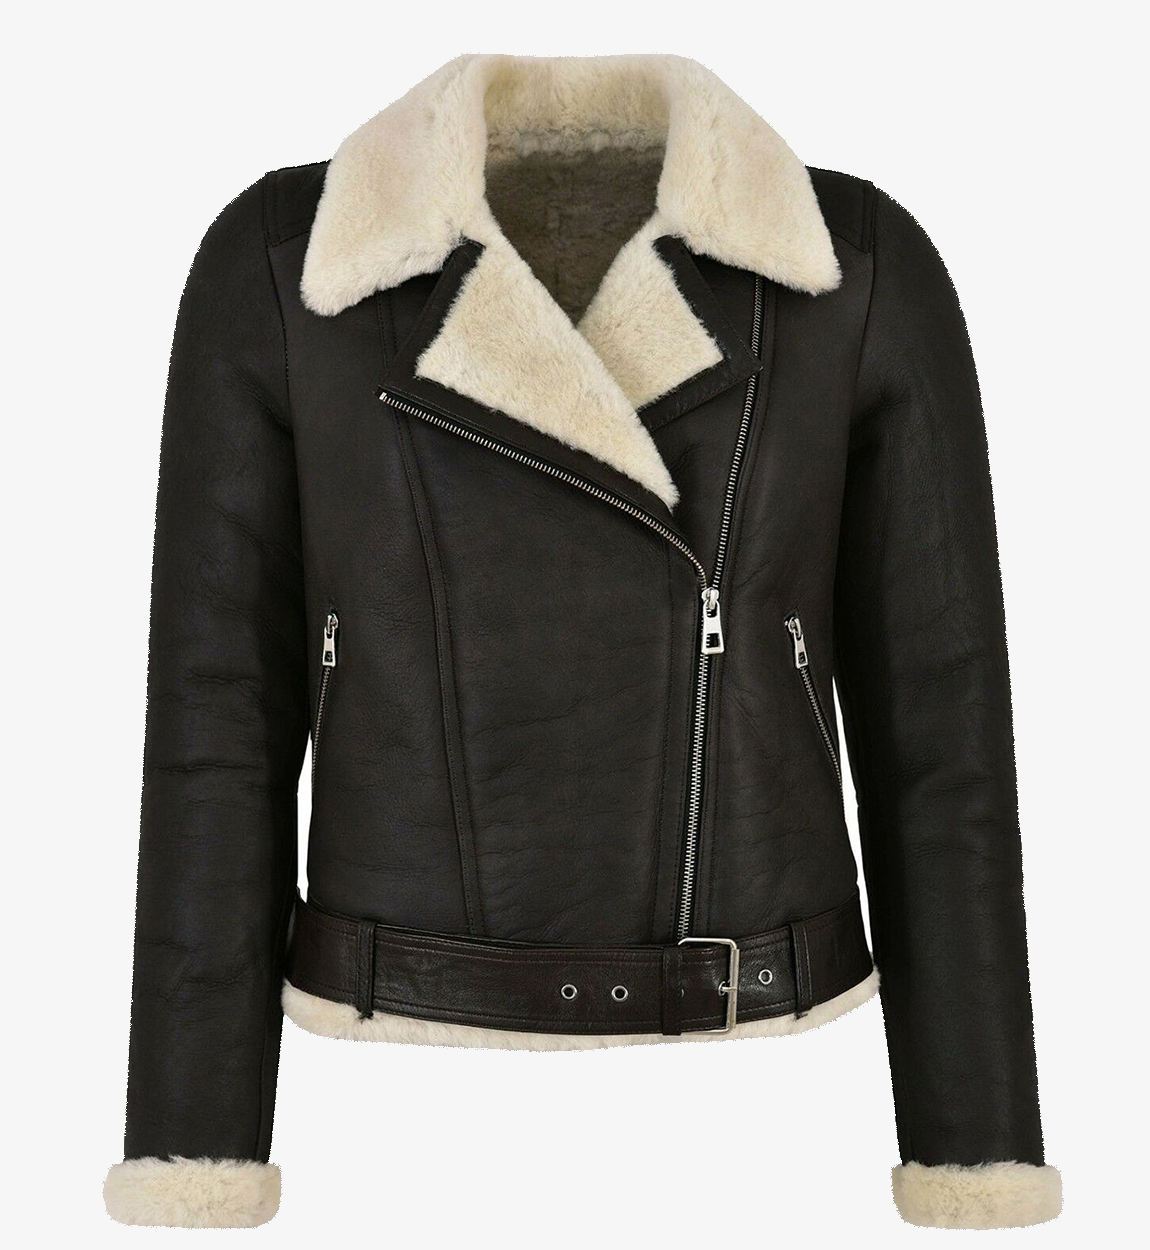 Women's Genuine Leather Faux Fur Shearling Biker Jacket